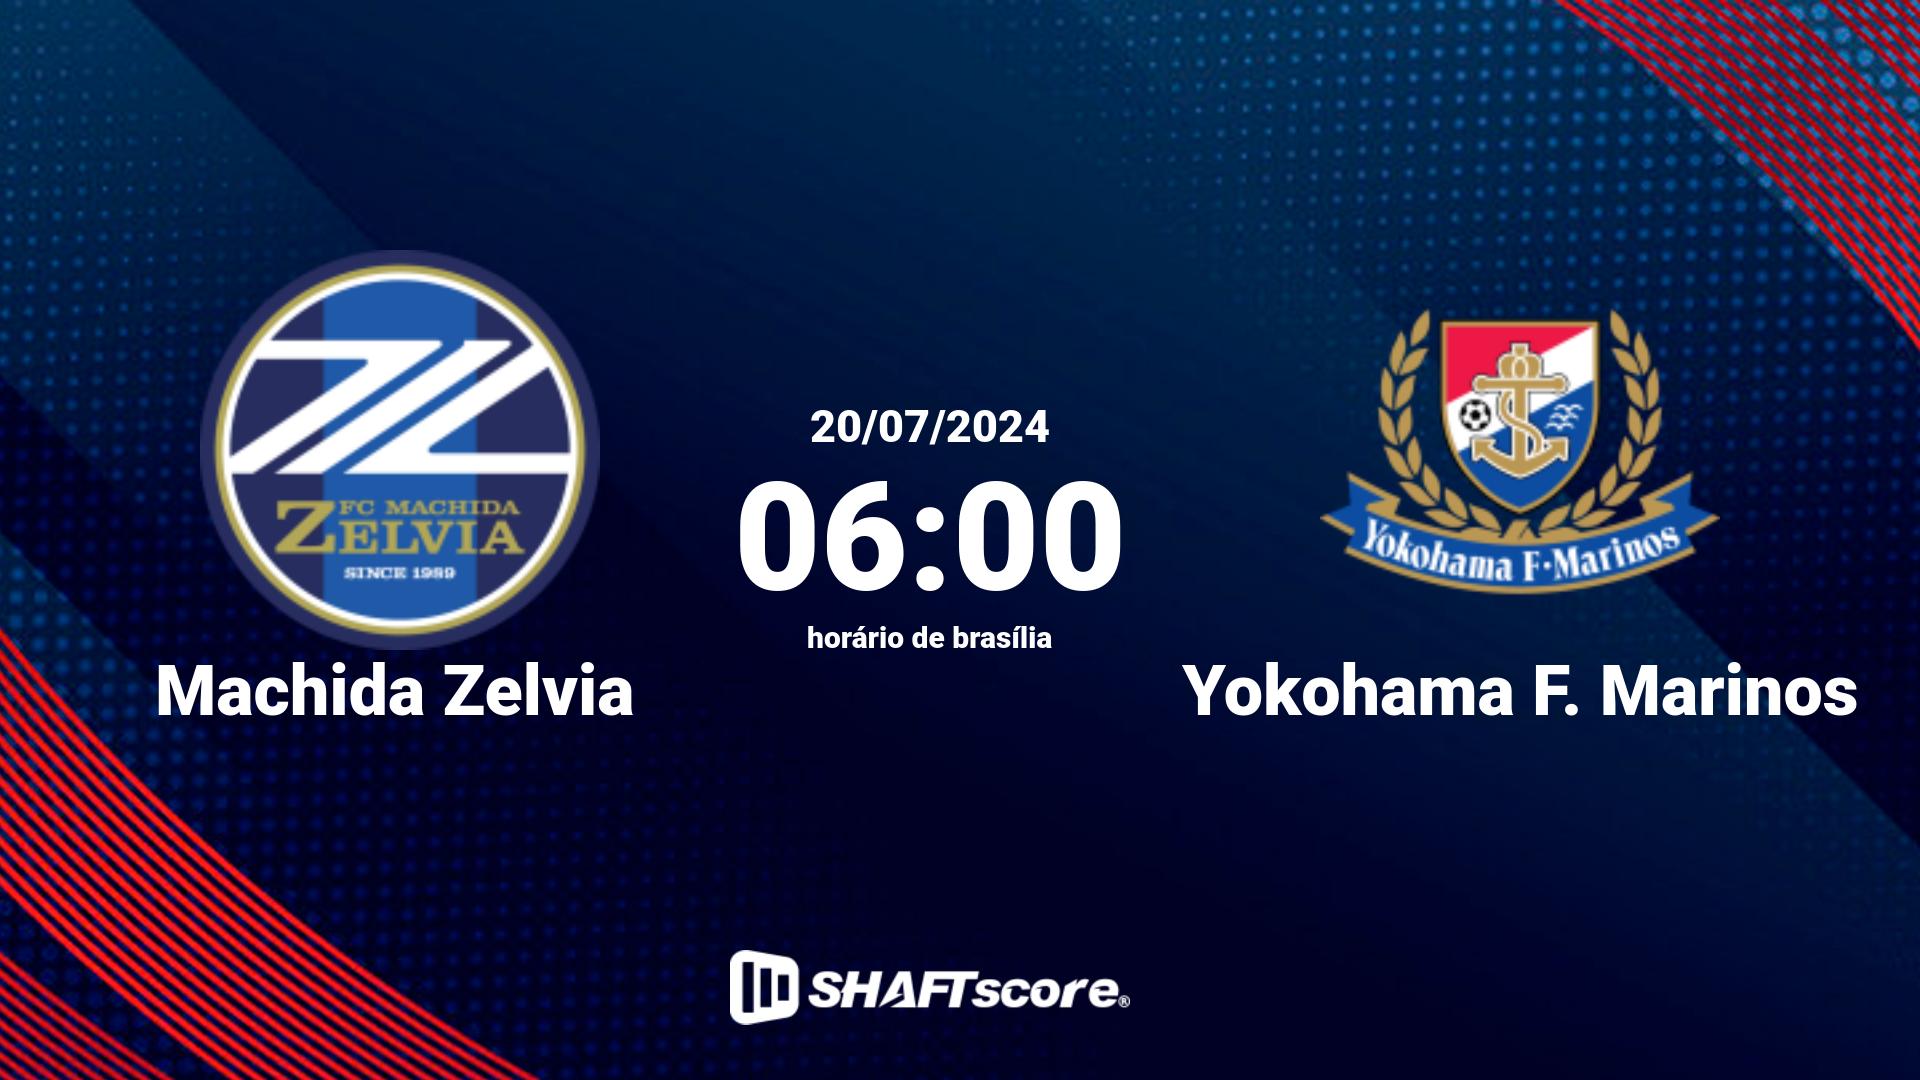 Estatísticas do jogo Machida Zelvia vs Yokohama F. Marinos 20.07 06:00